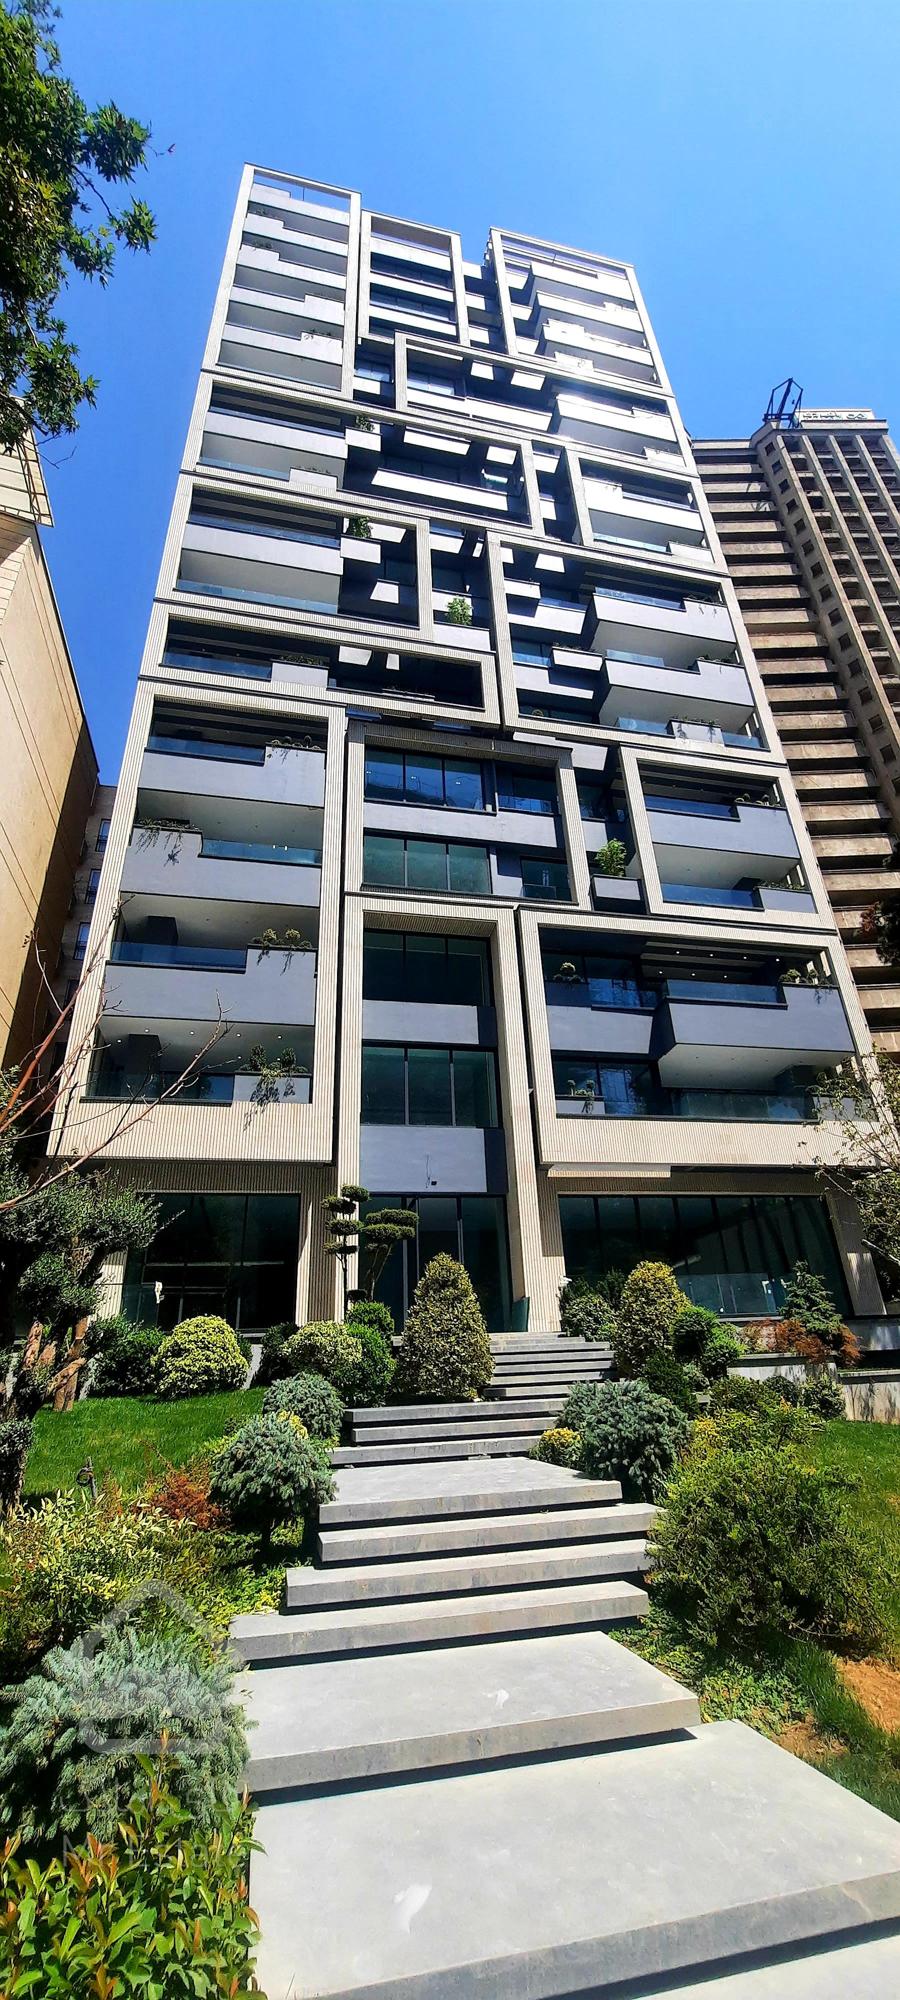 فروش آپارتمان ۳۲۵ متری در برج باغ کامرانیه